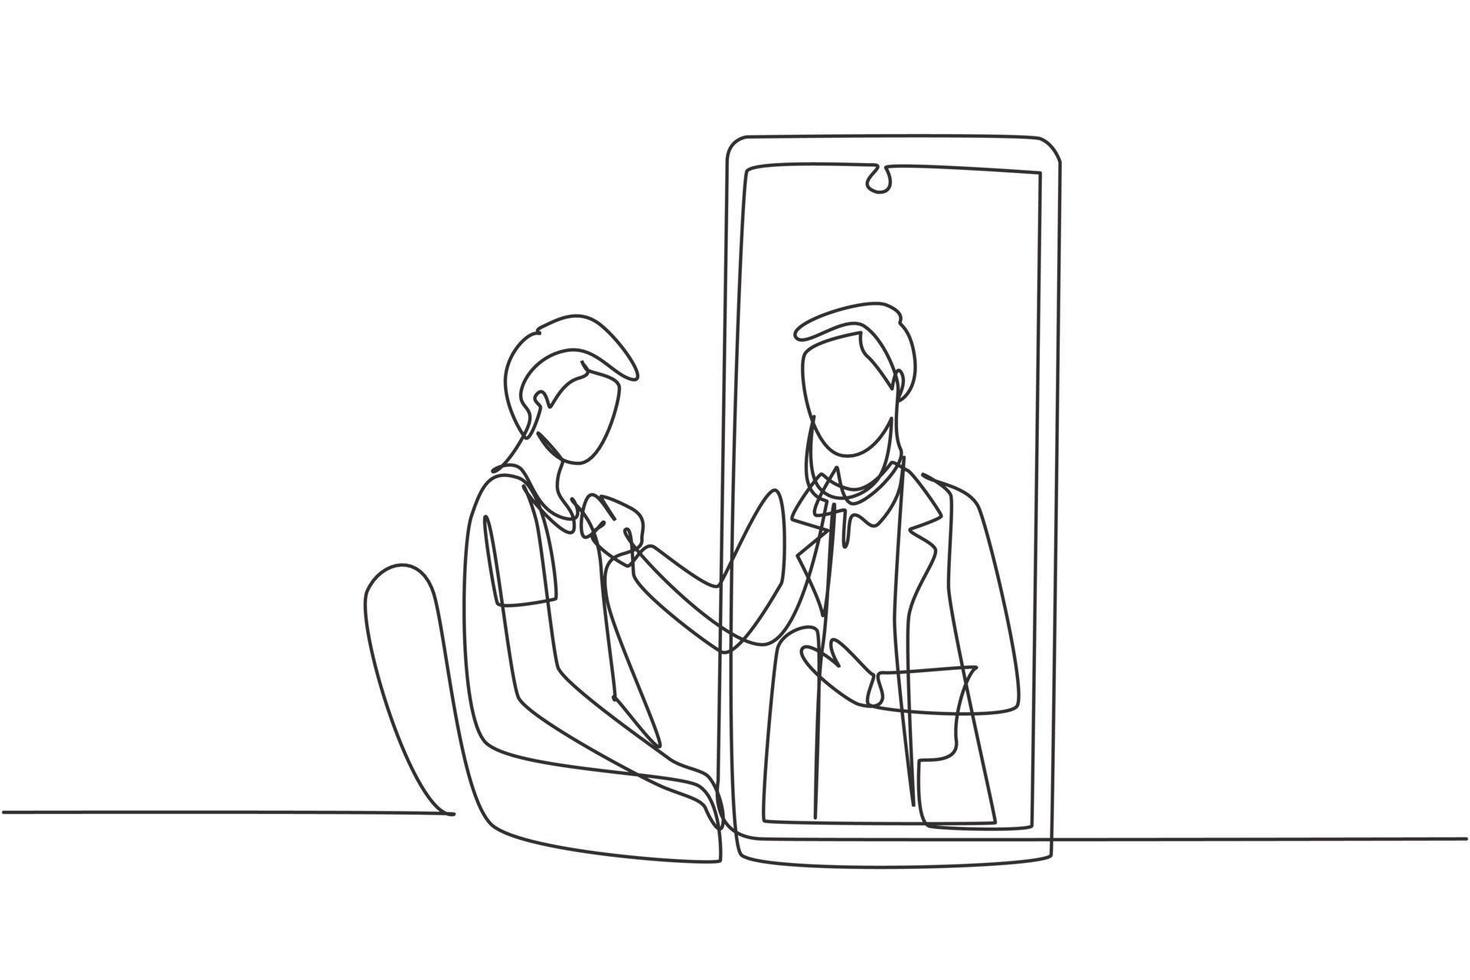 enkele doorlopende lijntekening mannelijke arts komt uit het smartphonescherm en controleert de hartslag van de mannelijke patiënt met een stethoscoop die op een stoel zit. een lijn tekenen grafisch ontwerp vectorillustratie vector